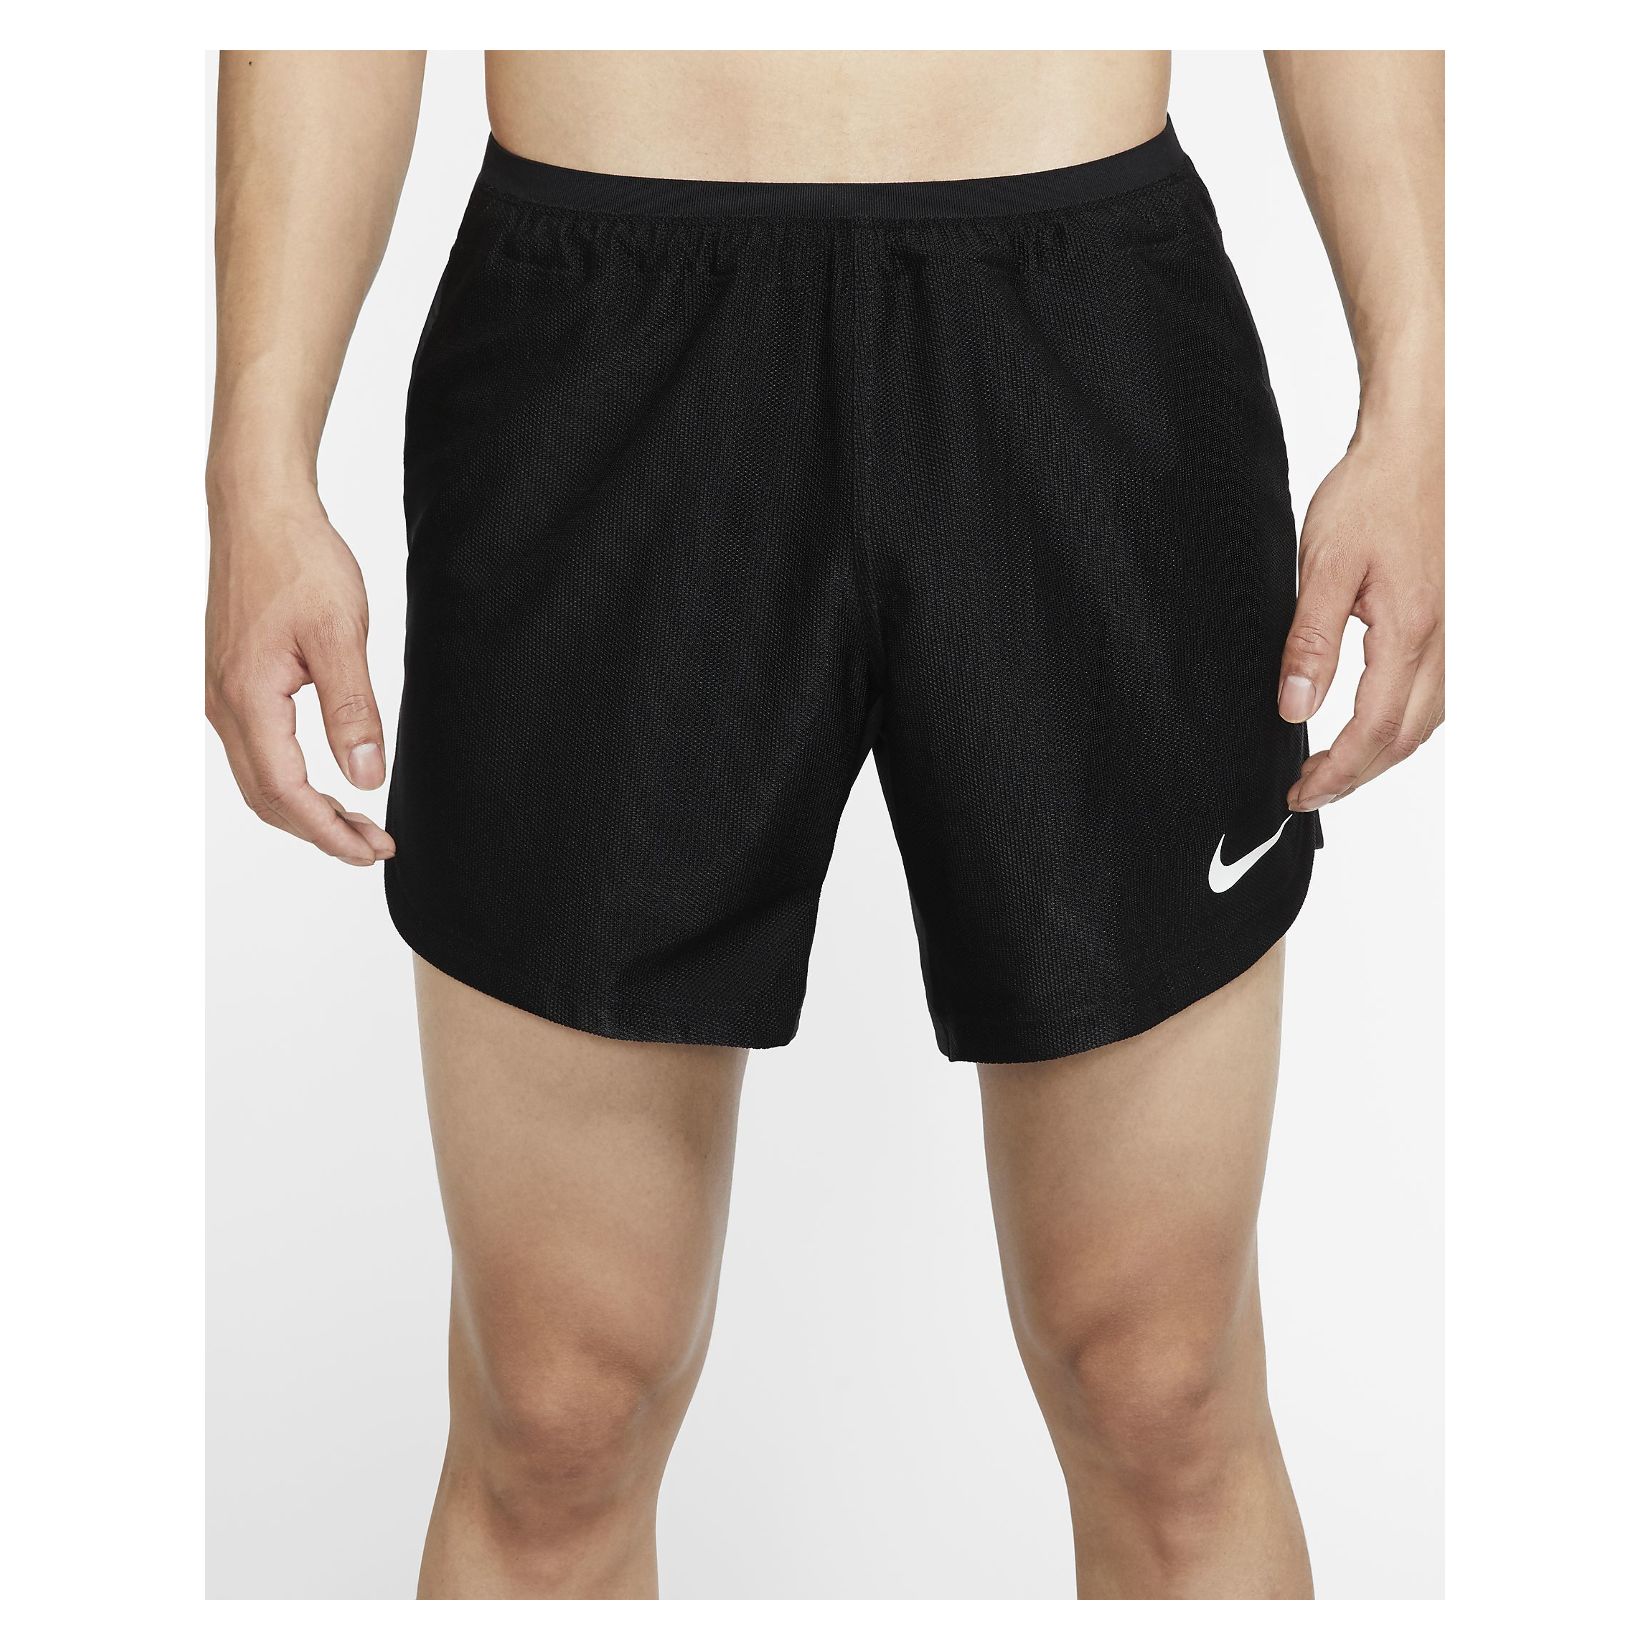 Nike Pro Shorts